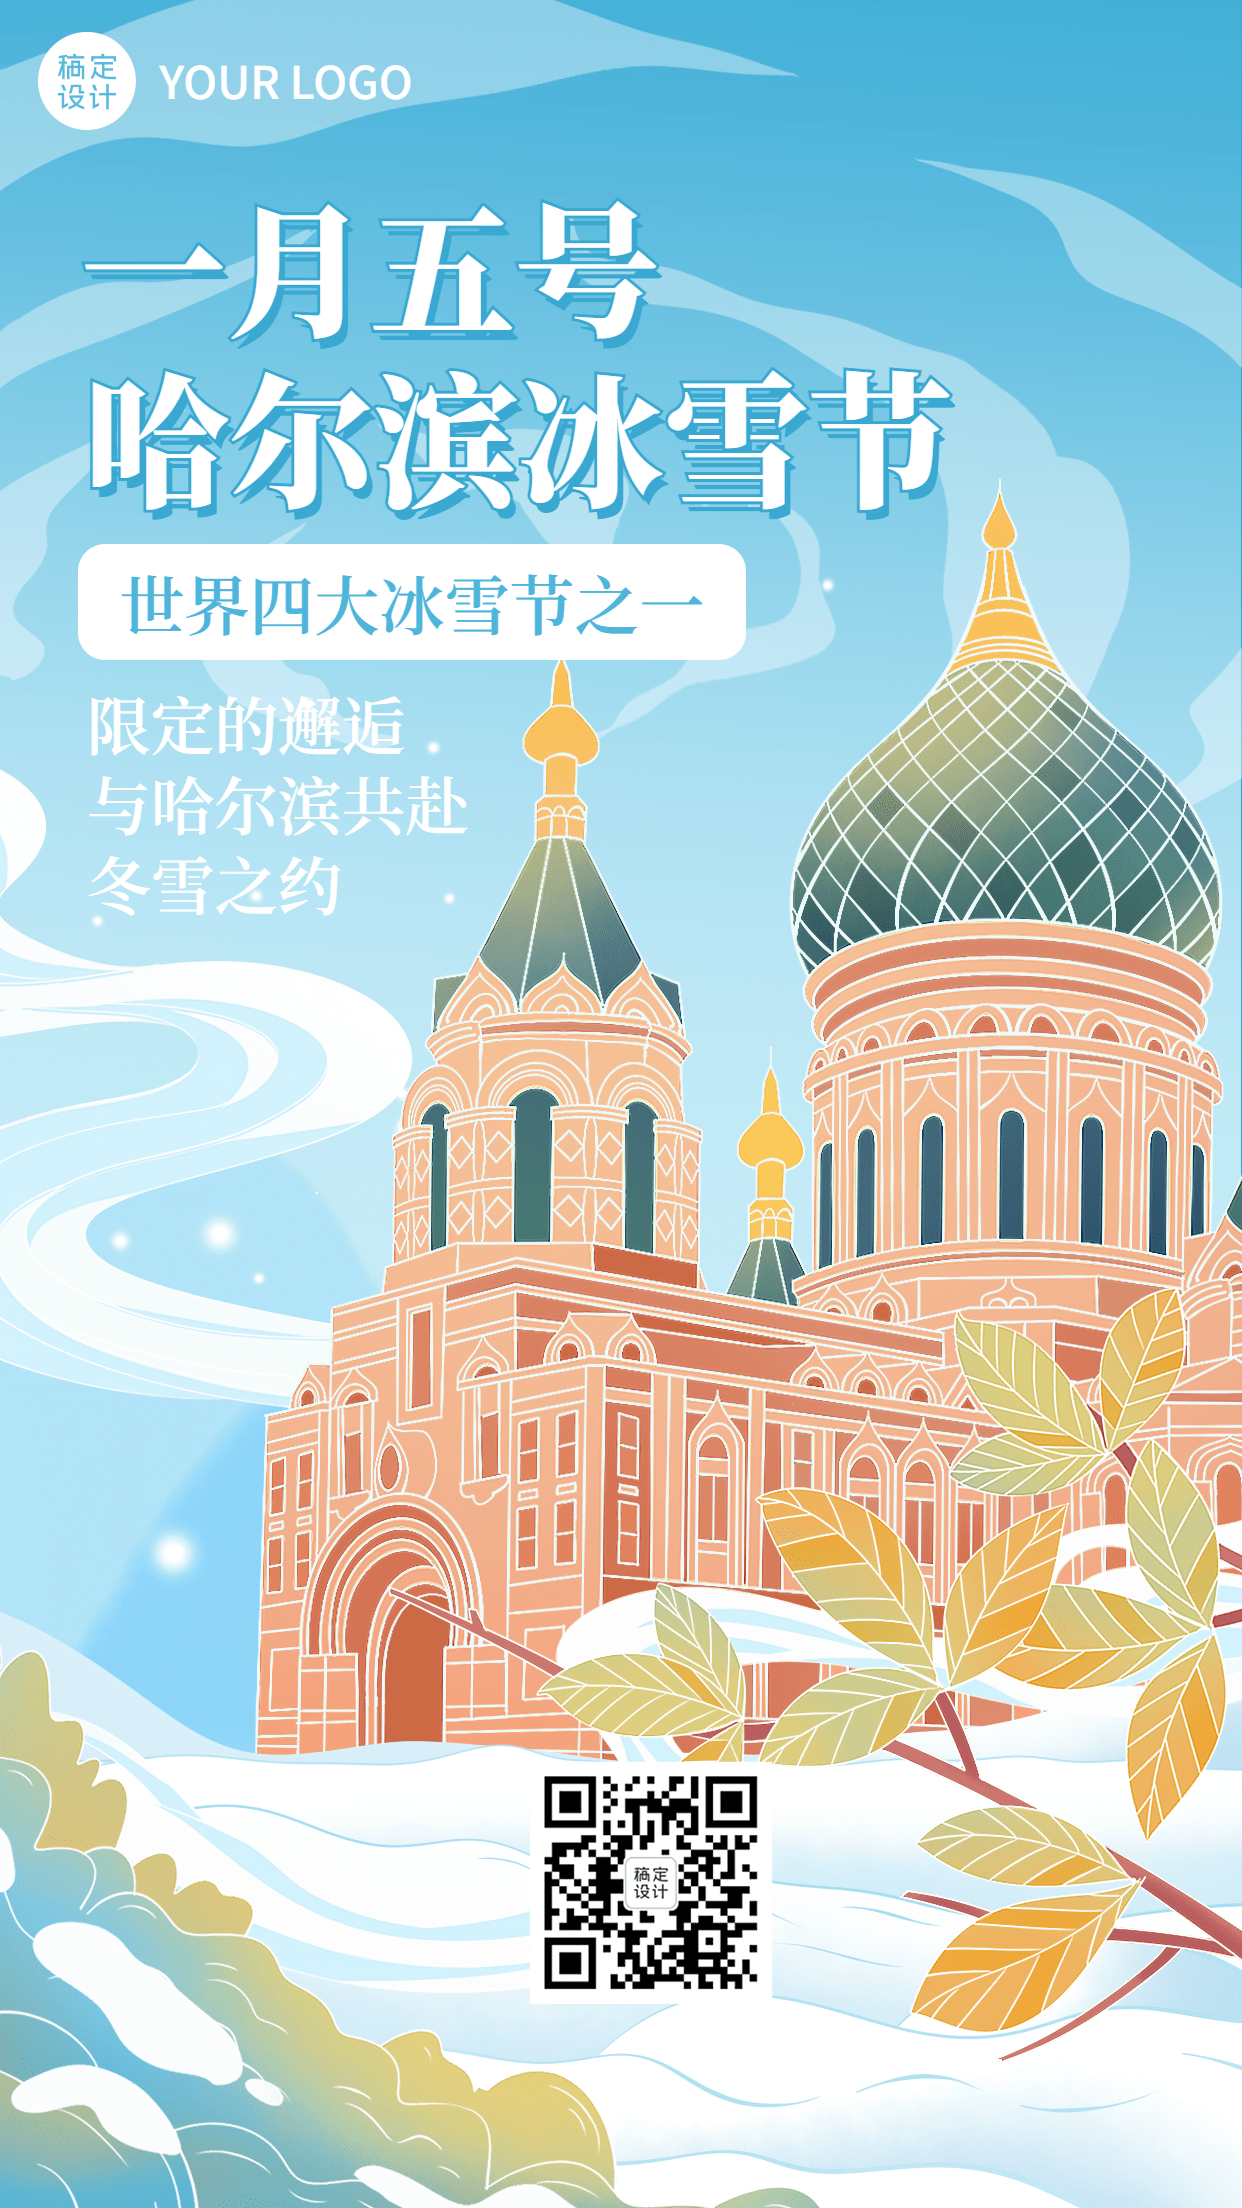 冬季冰雪旅游哈尔滨国际冰雪节活动宣传手绘海报预览效果